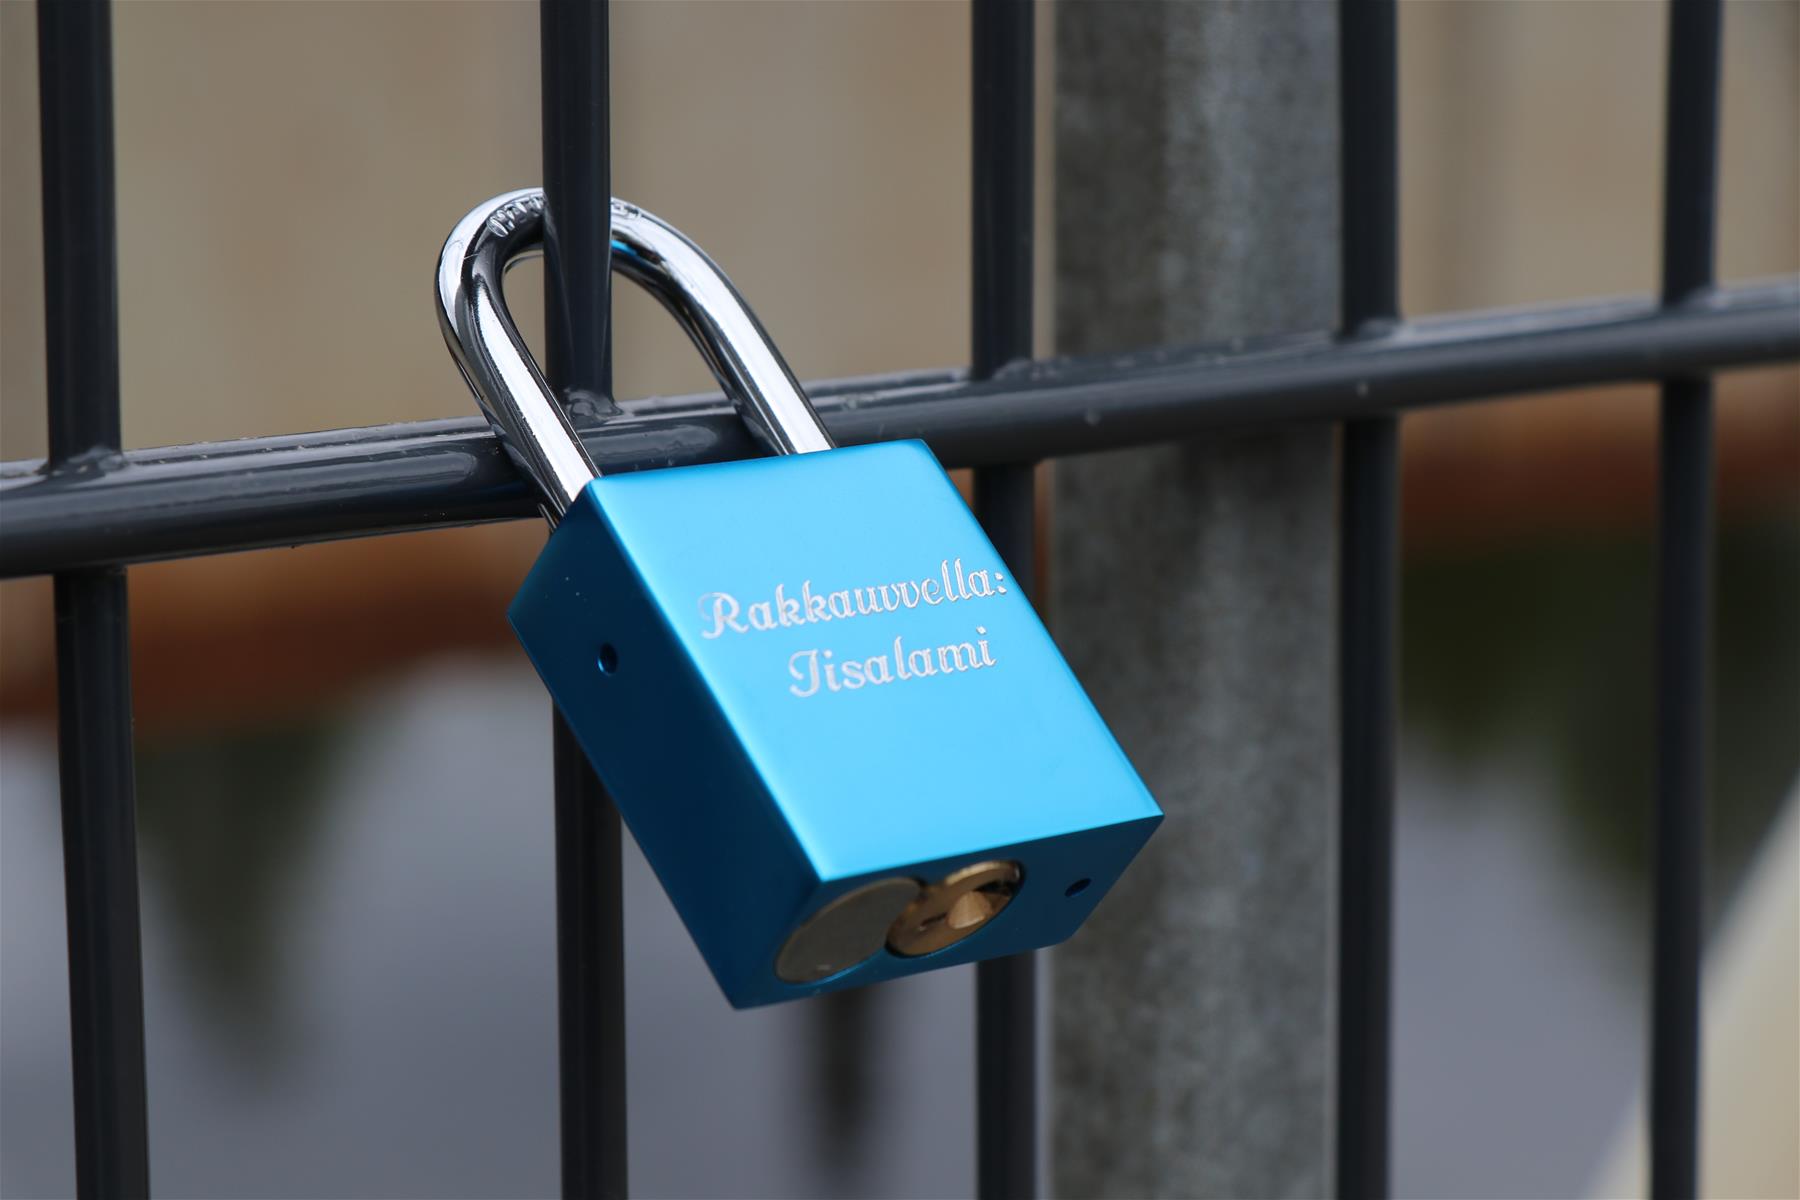 Sininen lukko, jossa on teksti rakkauvvella: Iisalami, riippuu sillan kaiteessa